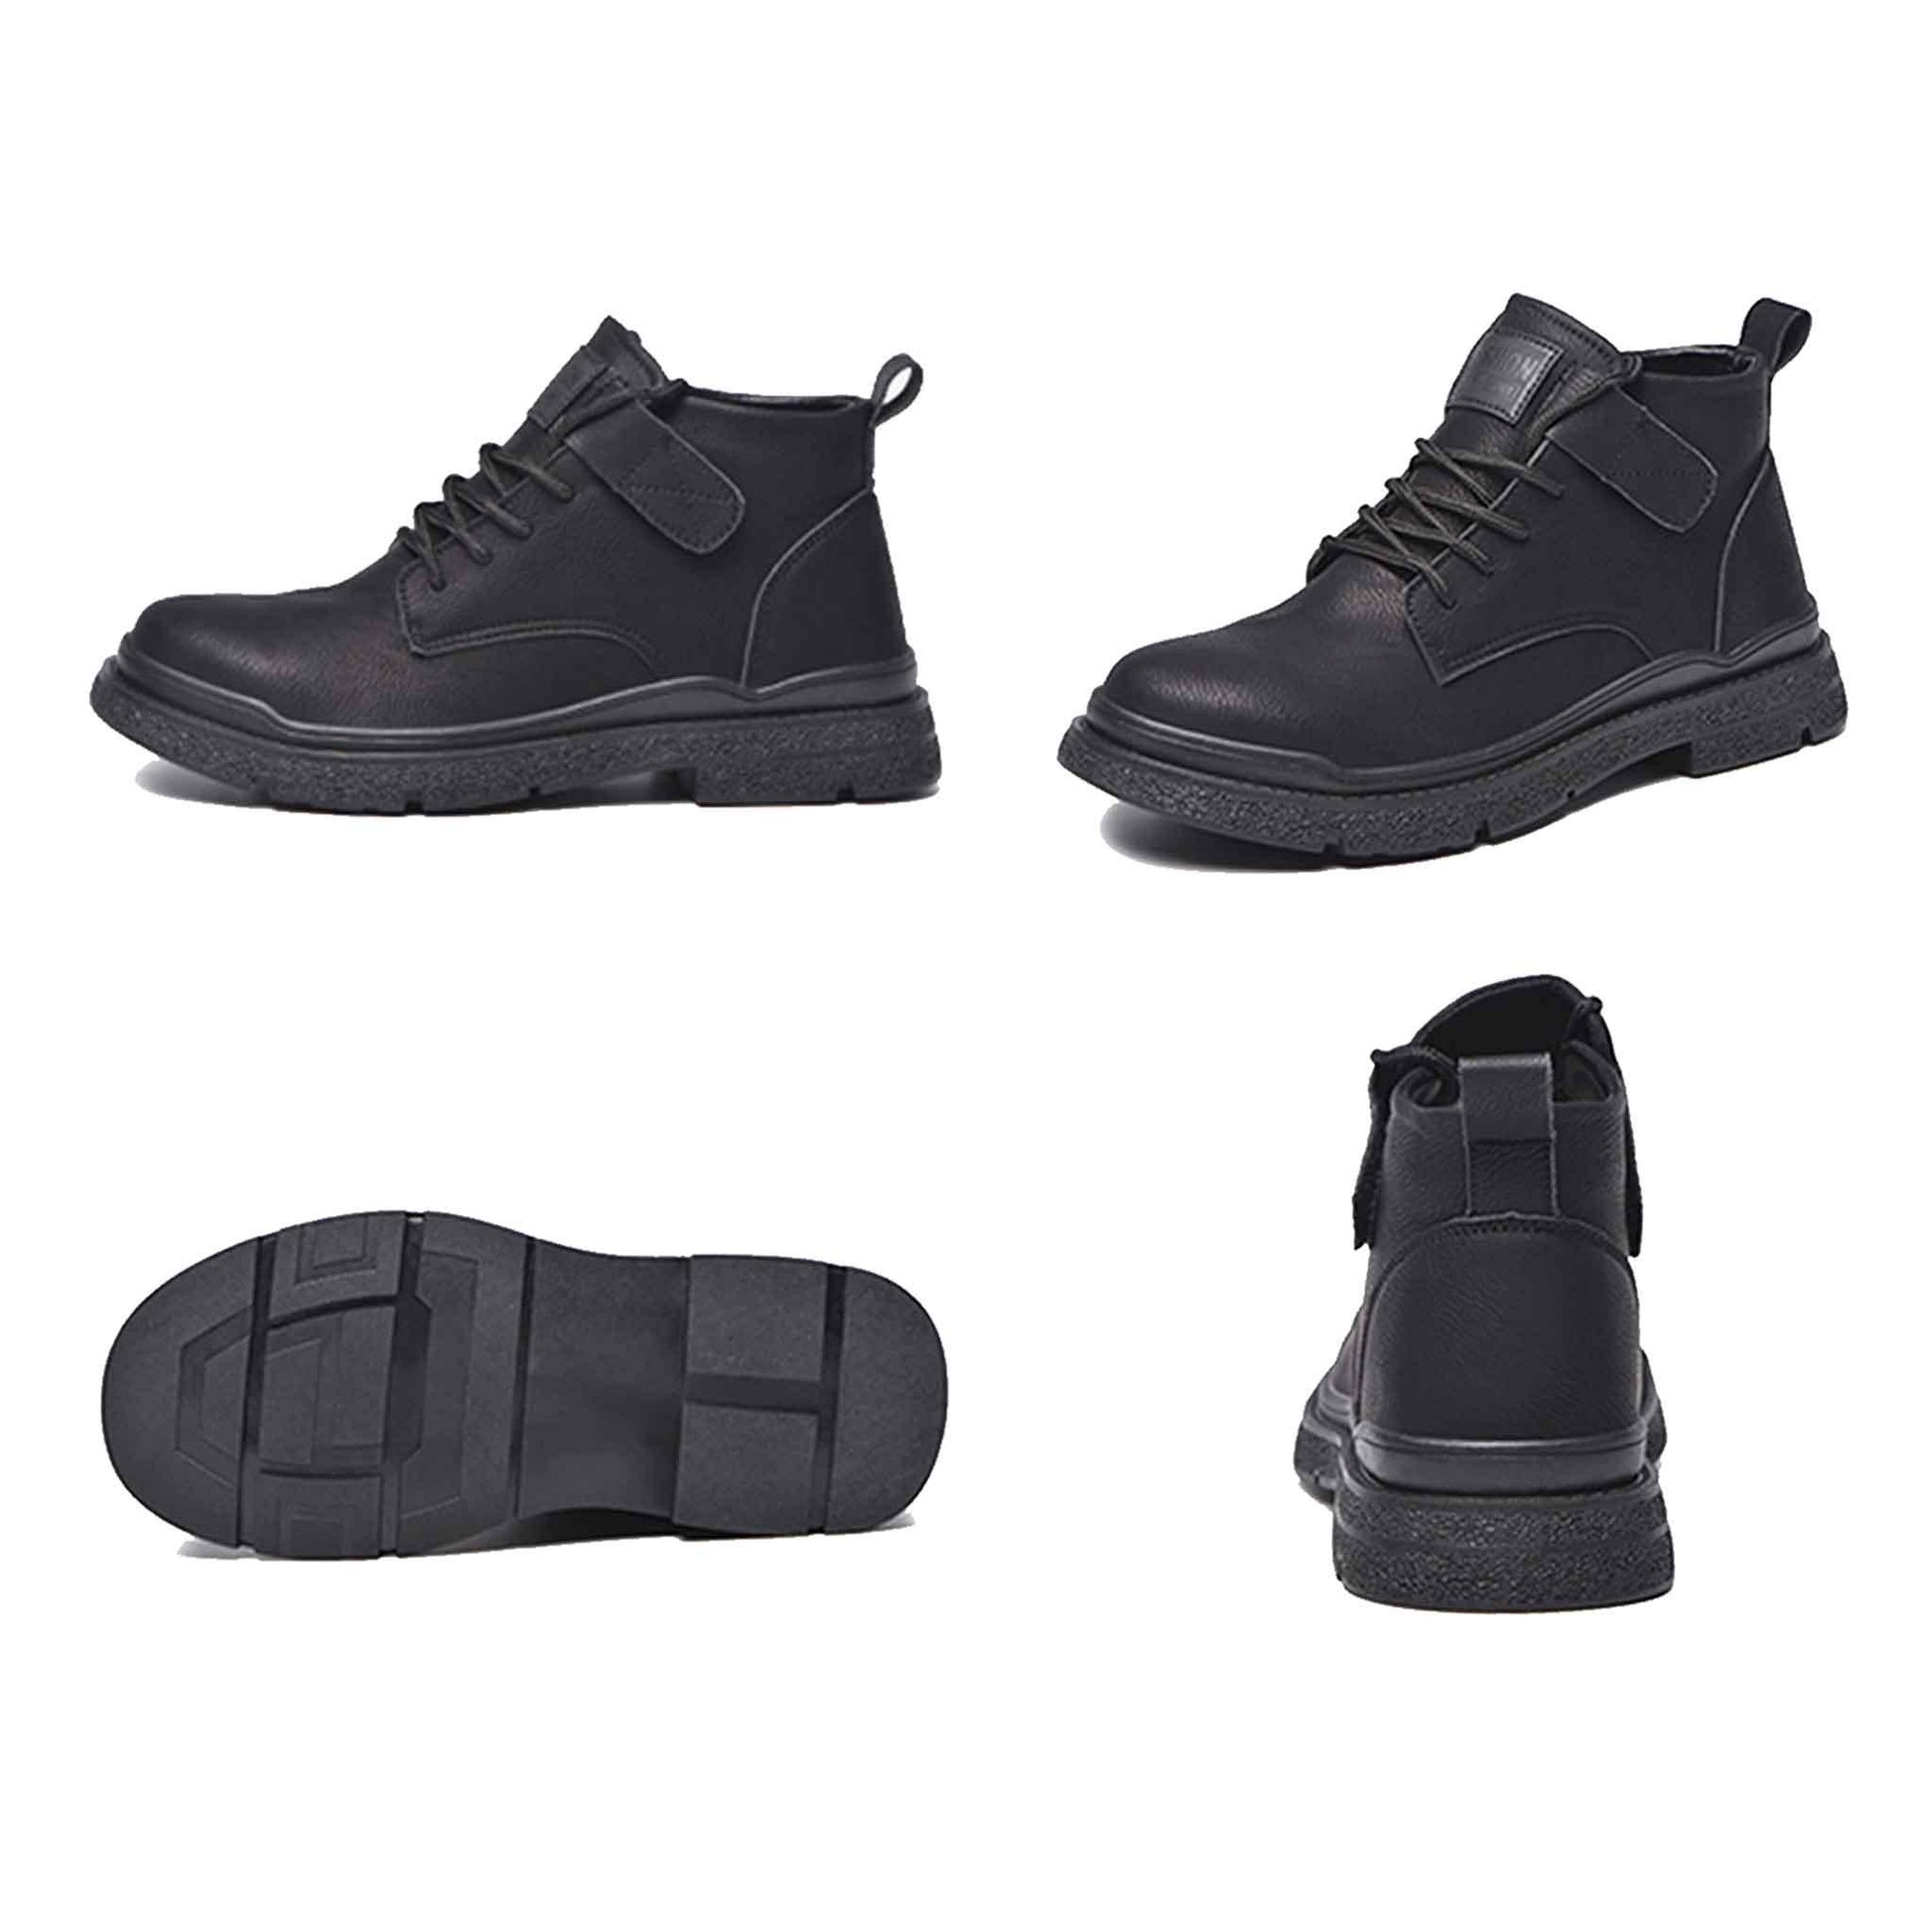 Women's Steel Toe Boots - Adjustable Velcro | B170 - USINE PRO Footwear